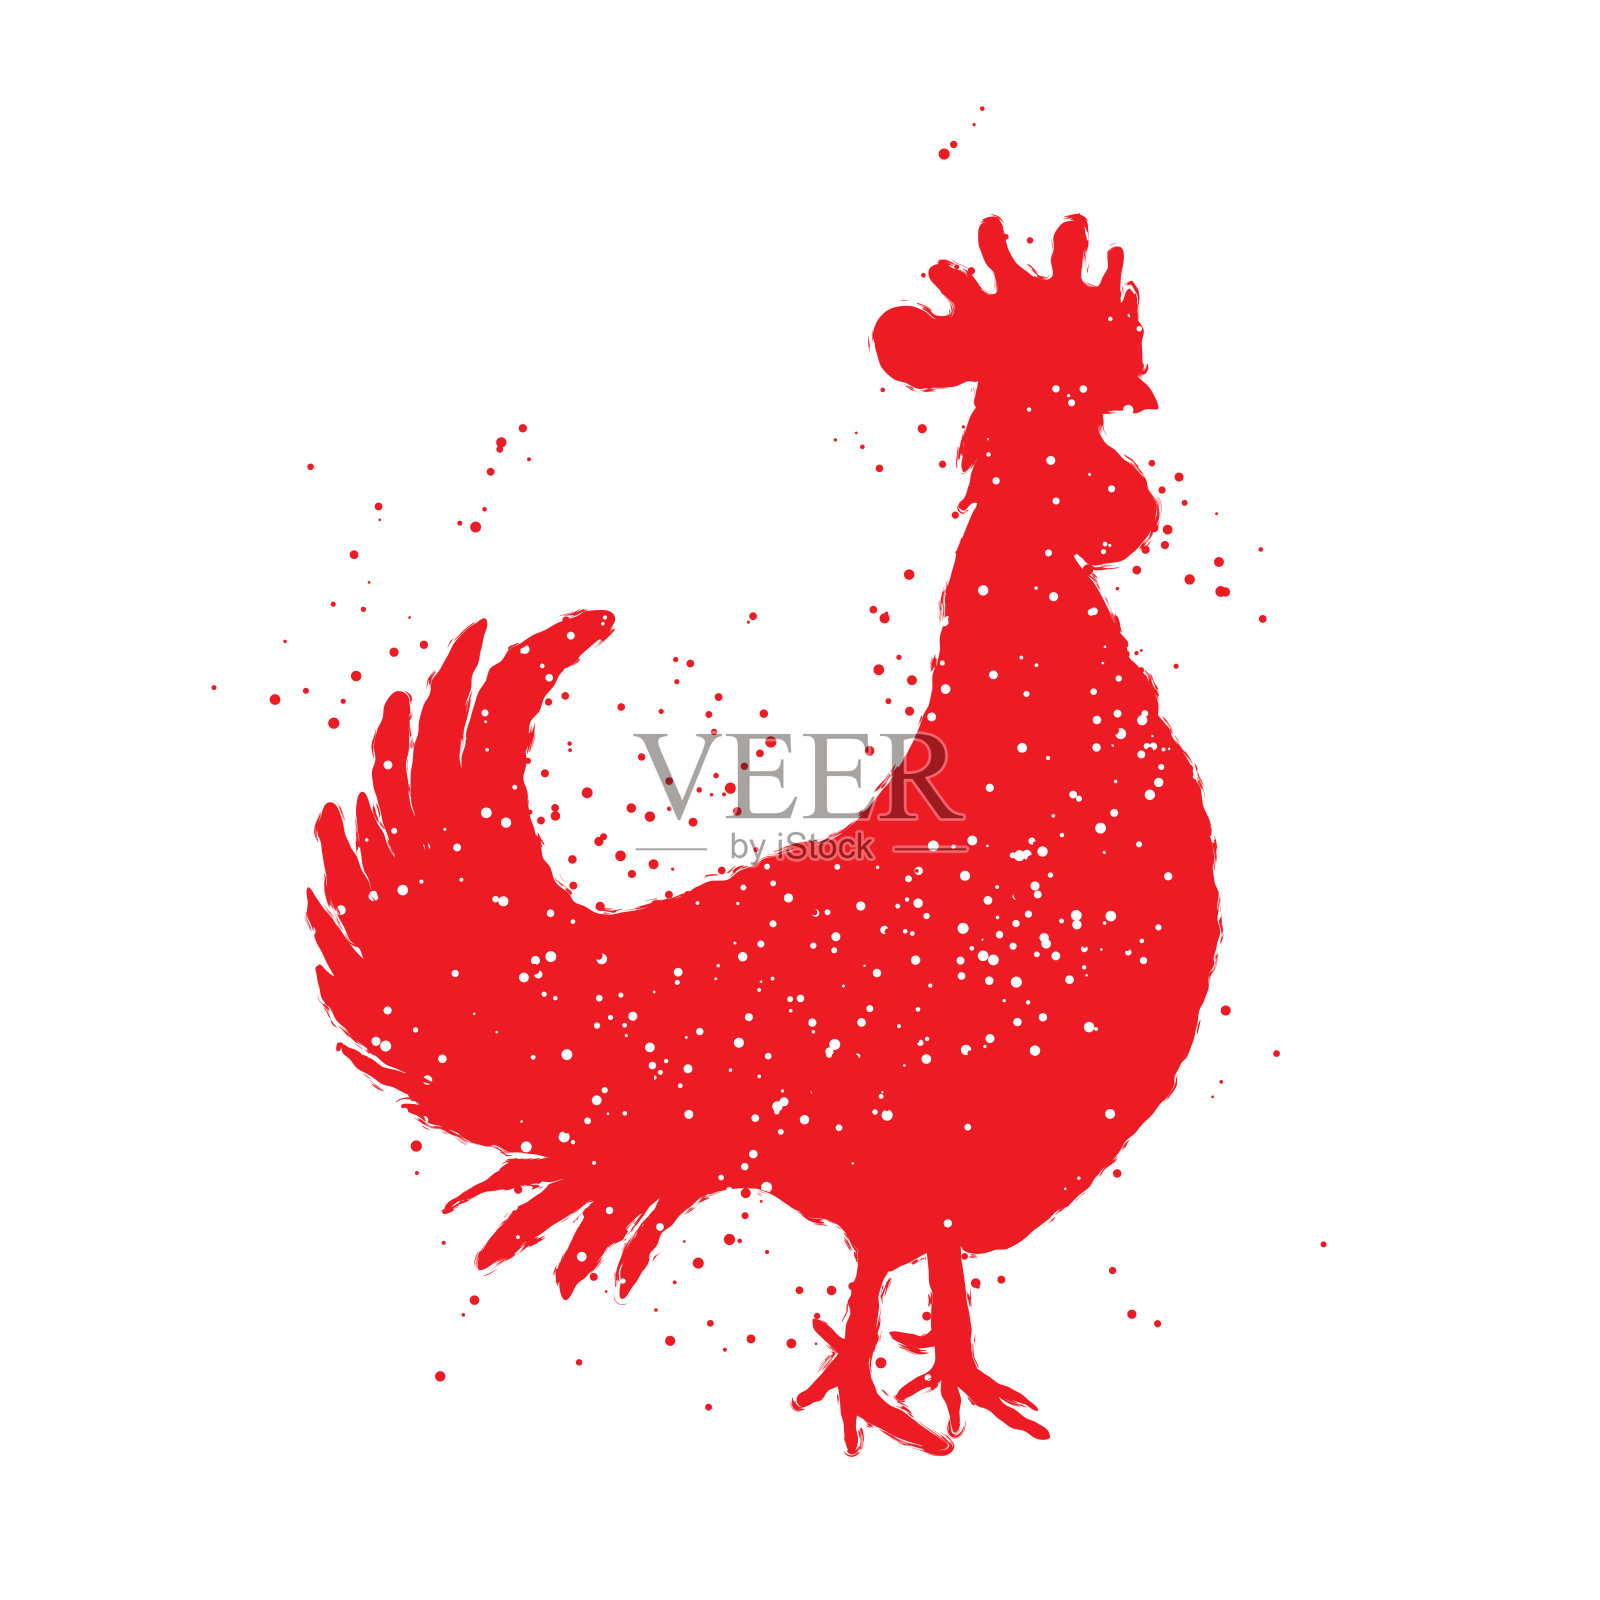 公鸡标签。复古风格矢量插图。仿中国书法公鸡剪影。水墨画，墨或印墨发纹在鸡鸡的边缘用墨喷溅。插画图片素材